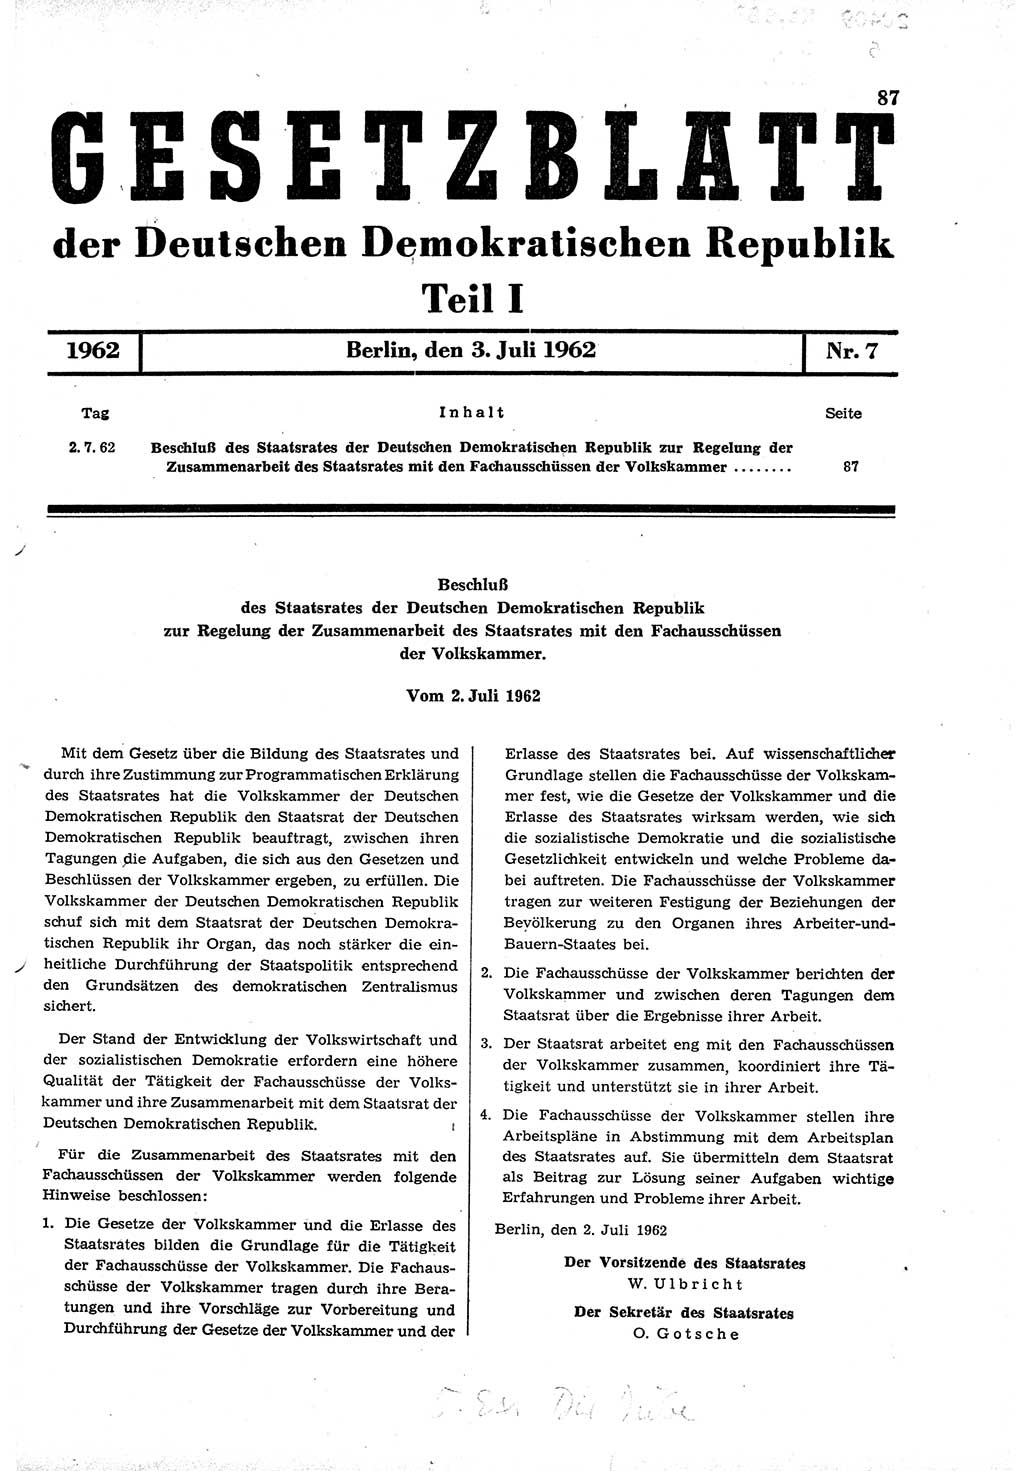 Gesetzblatt (GBl.) der Deutschen Demokratischen Republik (DDR) Teil Ⅰ 1962, Seite 87 (GBl. DDR Ⅰ 1962, S. 87)